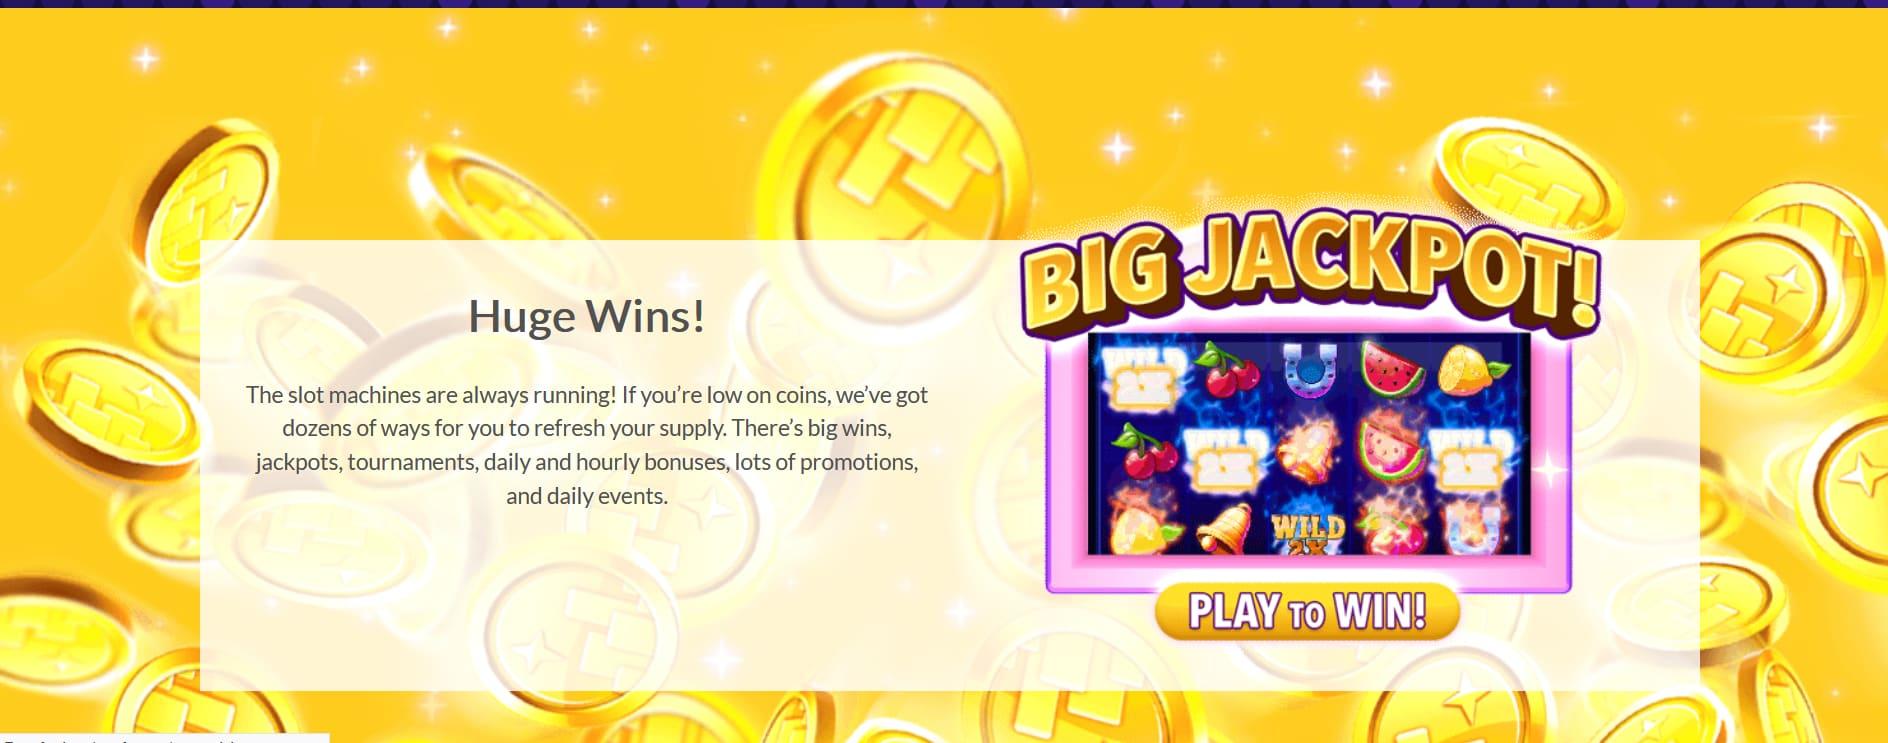 35,000+ Coin Jackpot Win